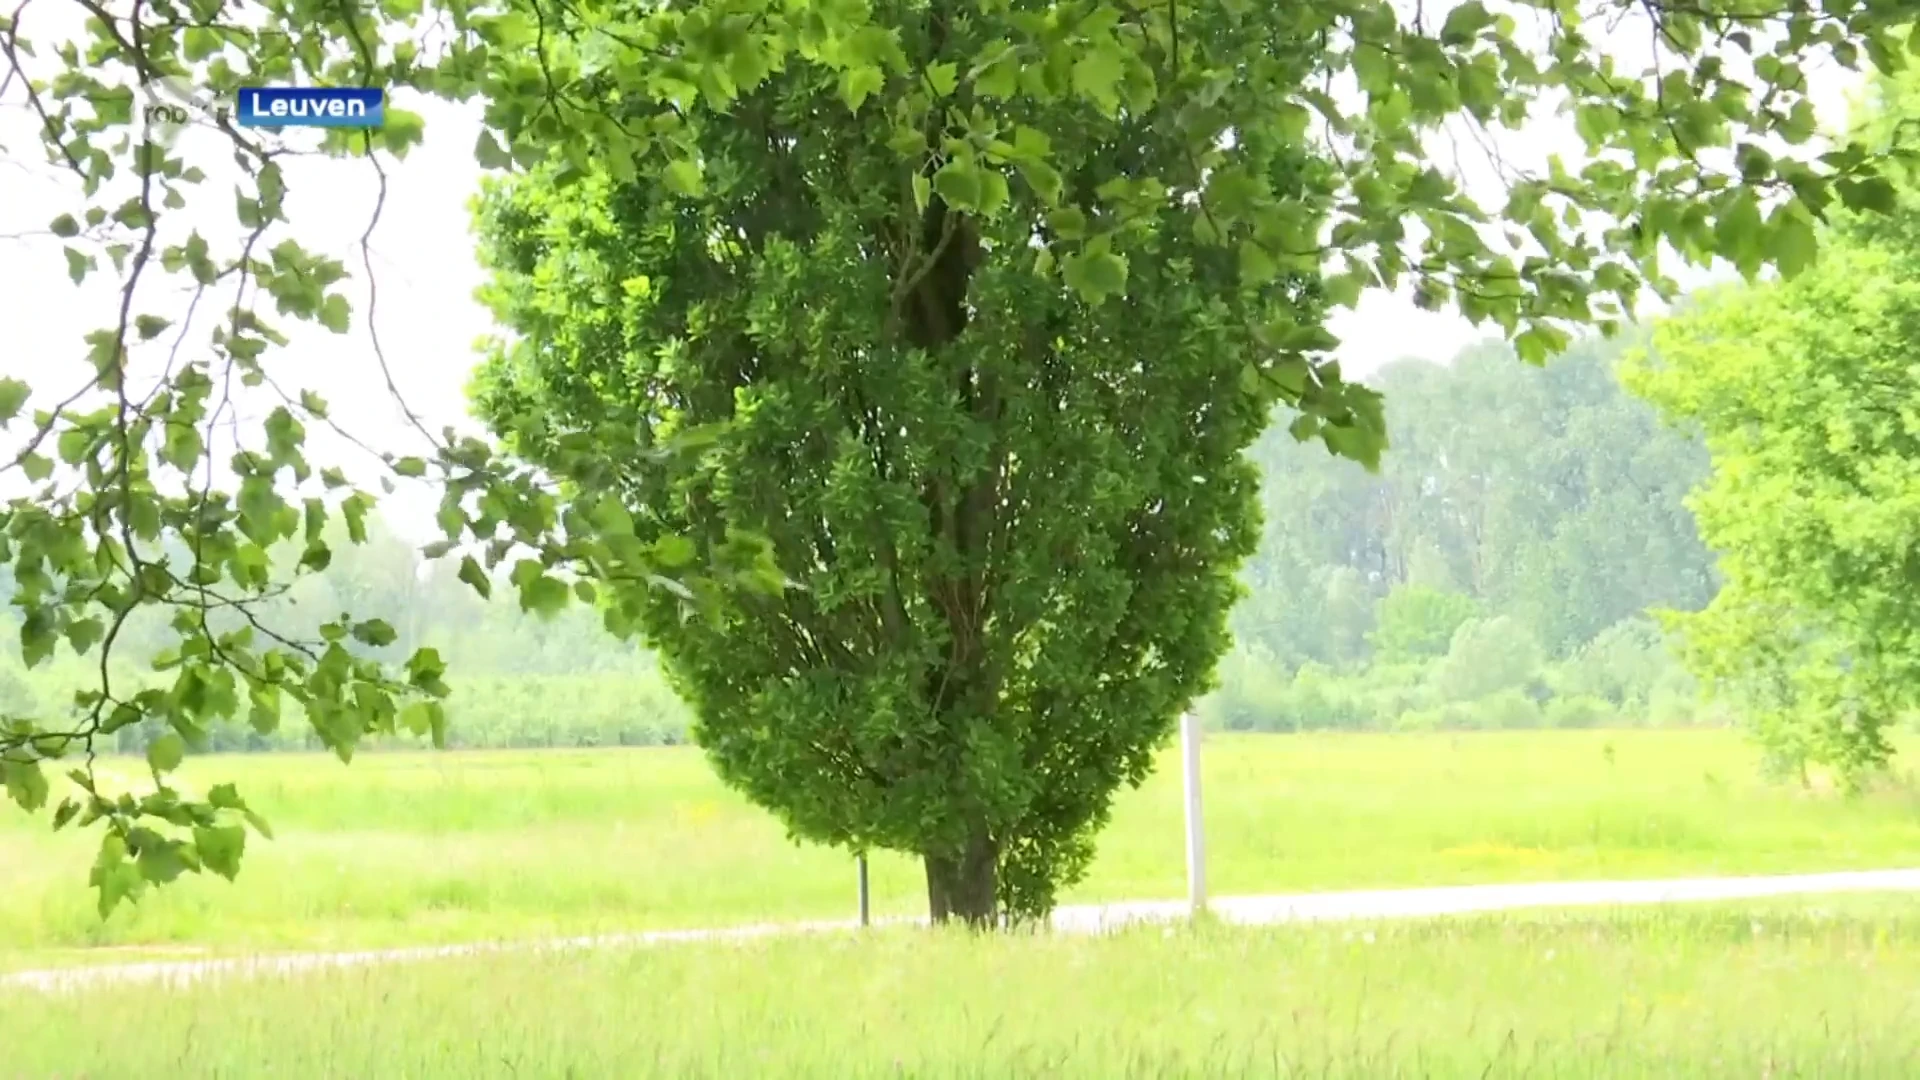 Size does matter: enkele grote bomen zijn beter voor de gezondheid dan veel kleine bomen